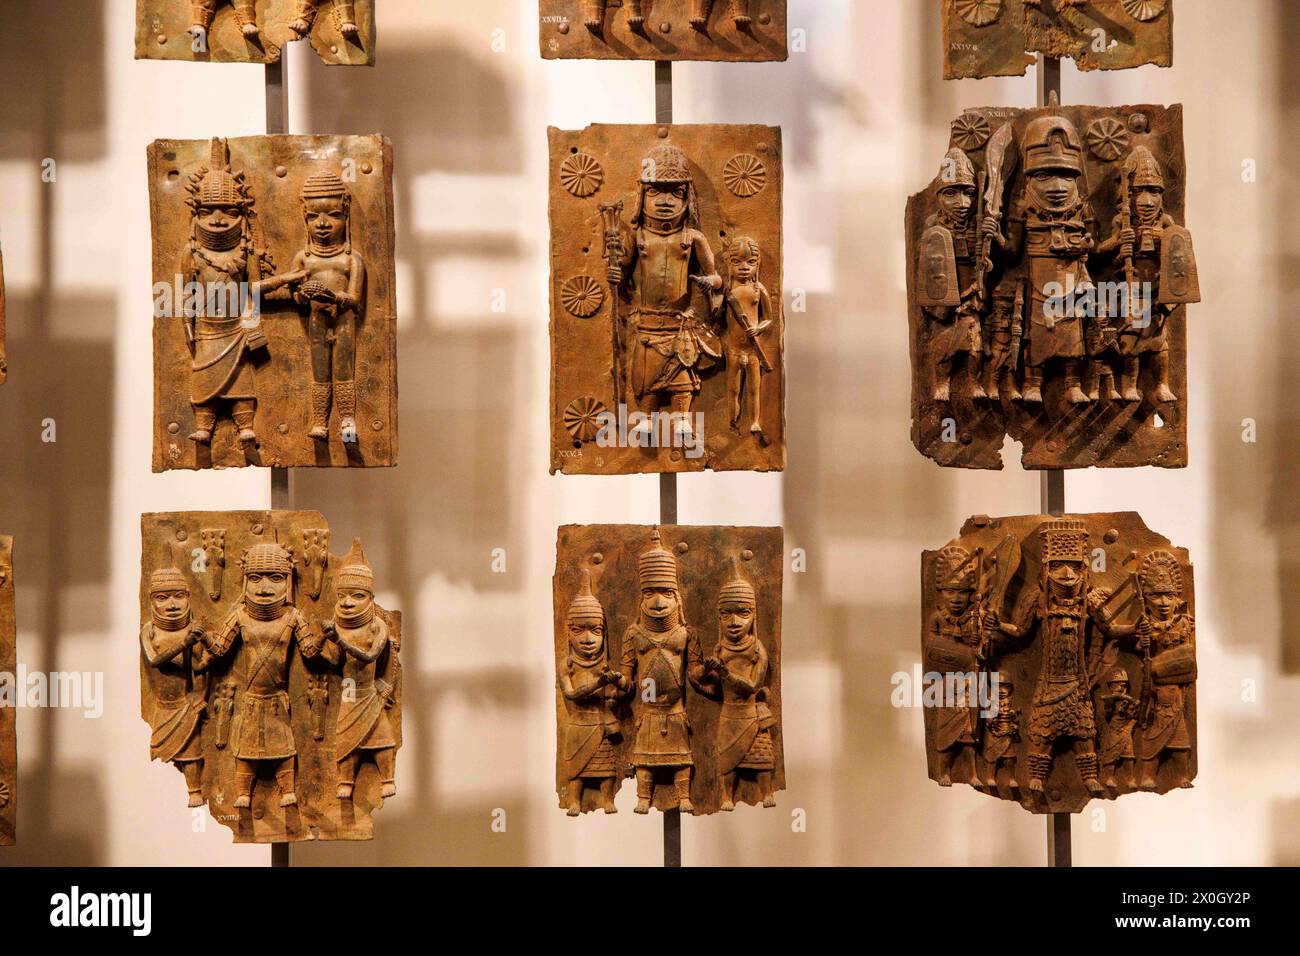 Londra, Regno Unito 12 aprile 2024 i Bronzi Benin nella sezione Africa al British Museum. I Bronzi del Benin sono un gruppo di migliaia di oggetti, tra cui placche in ghisa, teste umane e animali e figure che sono state prese dal regno del Benin, in quella che oggi è la Nigeria, nel 1897. I Bronzi furono probabilmente realizzati tra il 1550-1650 da artigiani che lavoravano per la corte di Oba il re. Per molti nigeriani, i Bronzi del Benin sono un potente ricordo del colonialismo e dei suoi continui effetti sulla società africana. I cittadini del paese hanno da tempo chiesto il ritorno dei Bronzi del Benin. Foto Stock